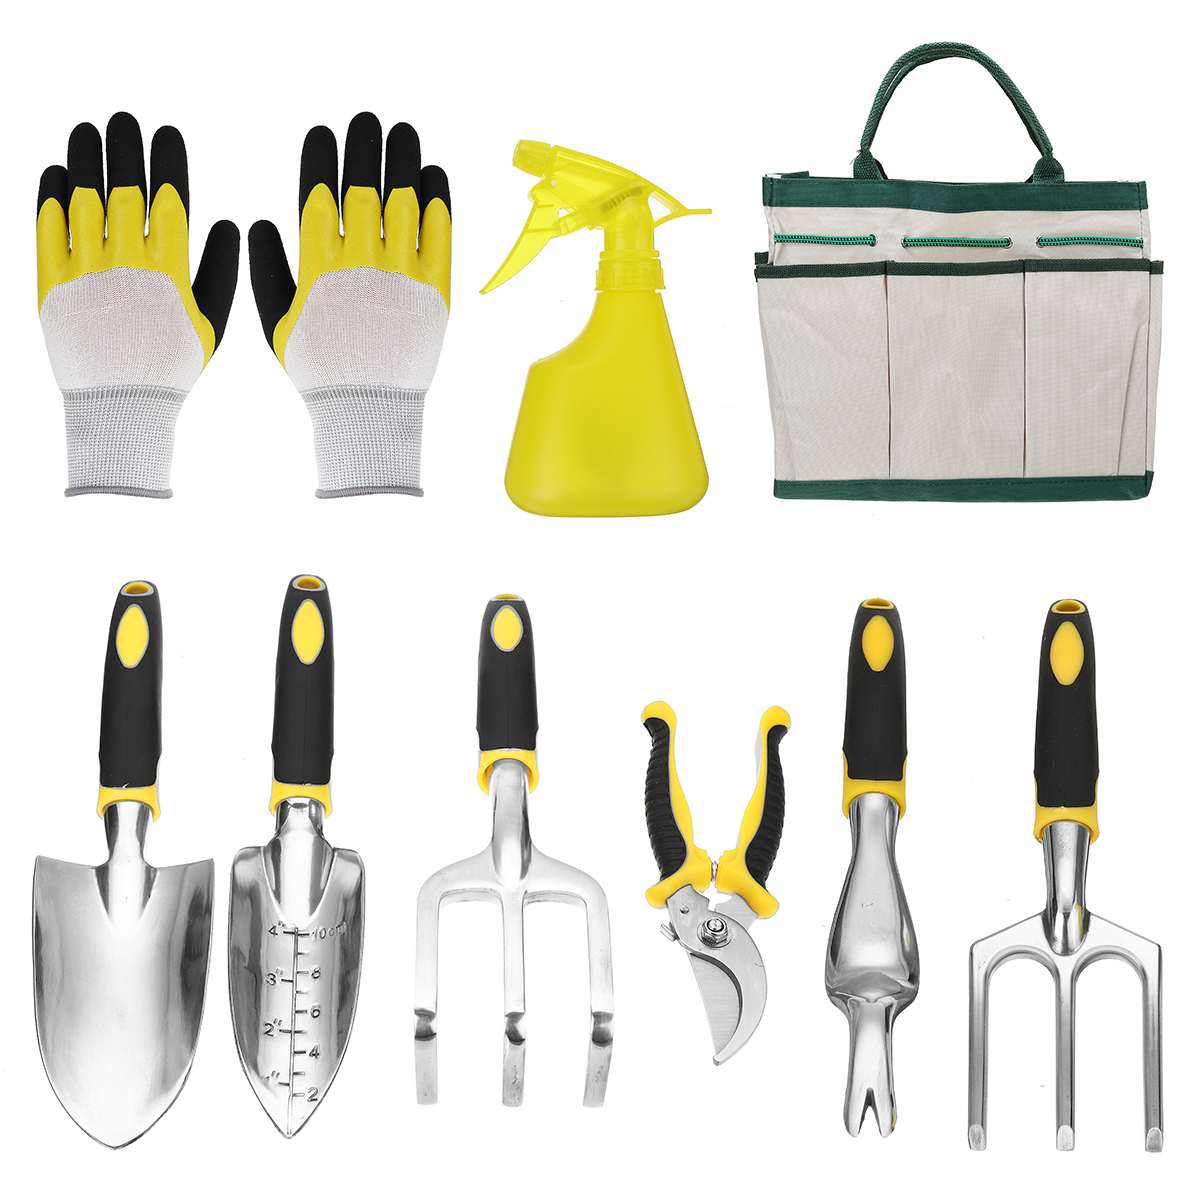 Garden Tool Set 5/9 Pcs /set Multi-Functional Garden Kit Practical/Trowel/Rake/Shovel/Fork/Scissors/Gloves/Tool Bag Included